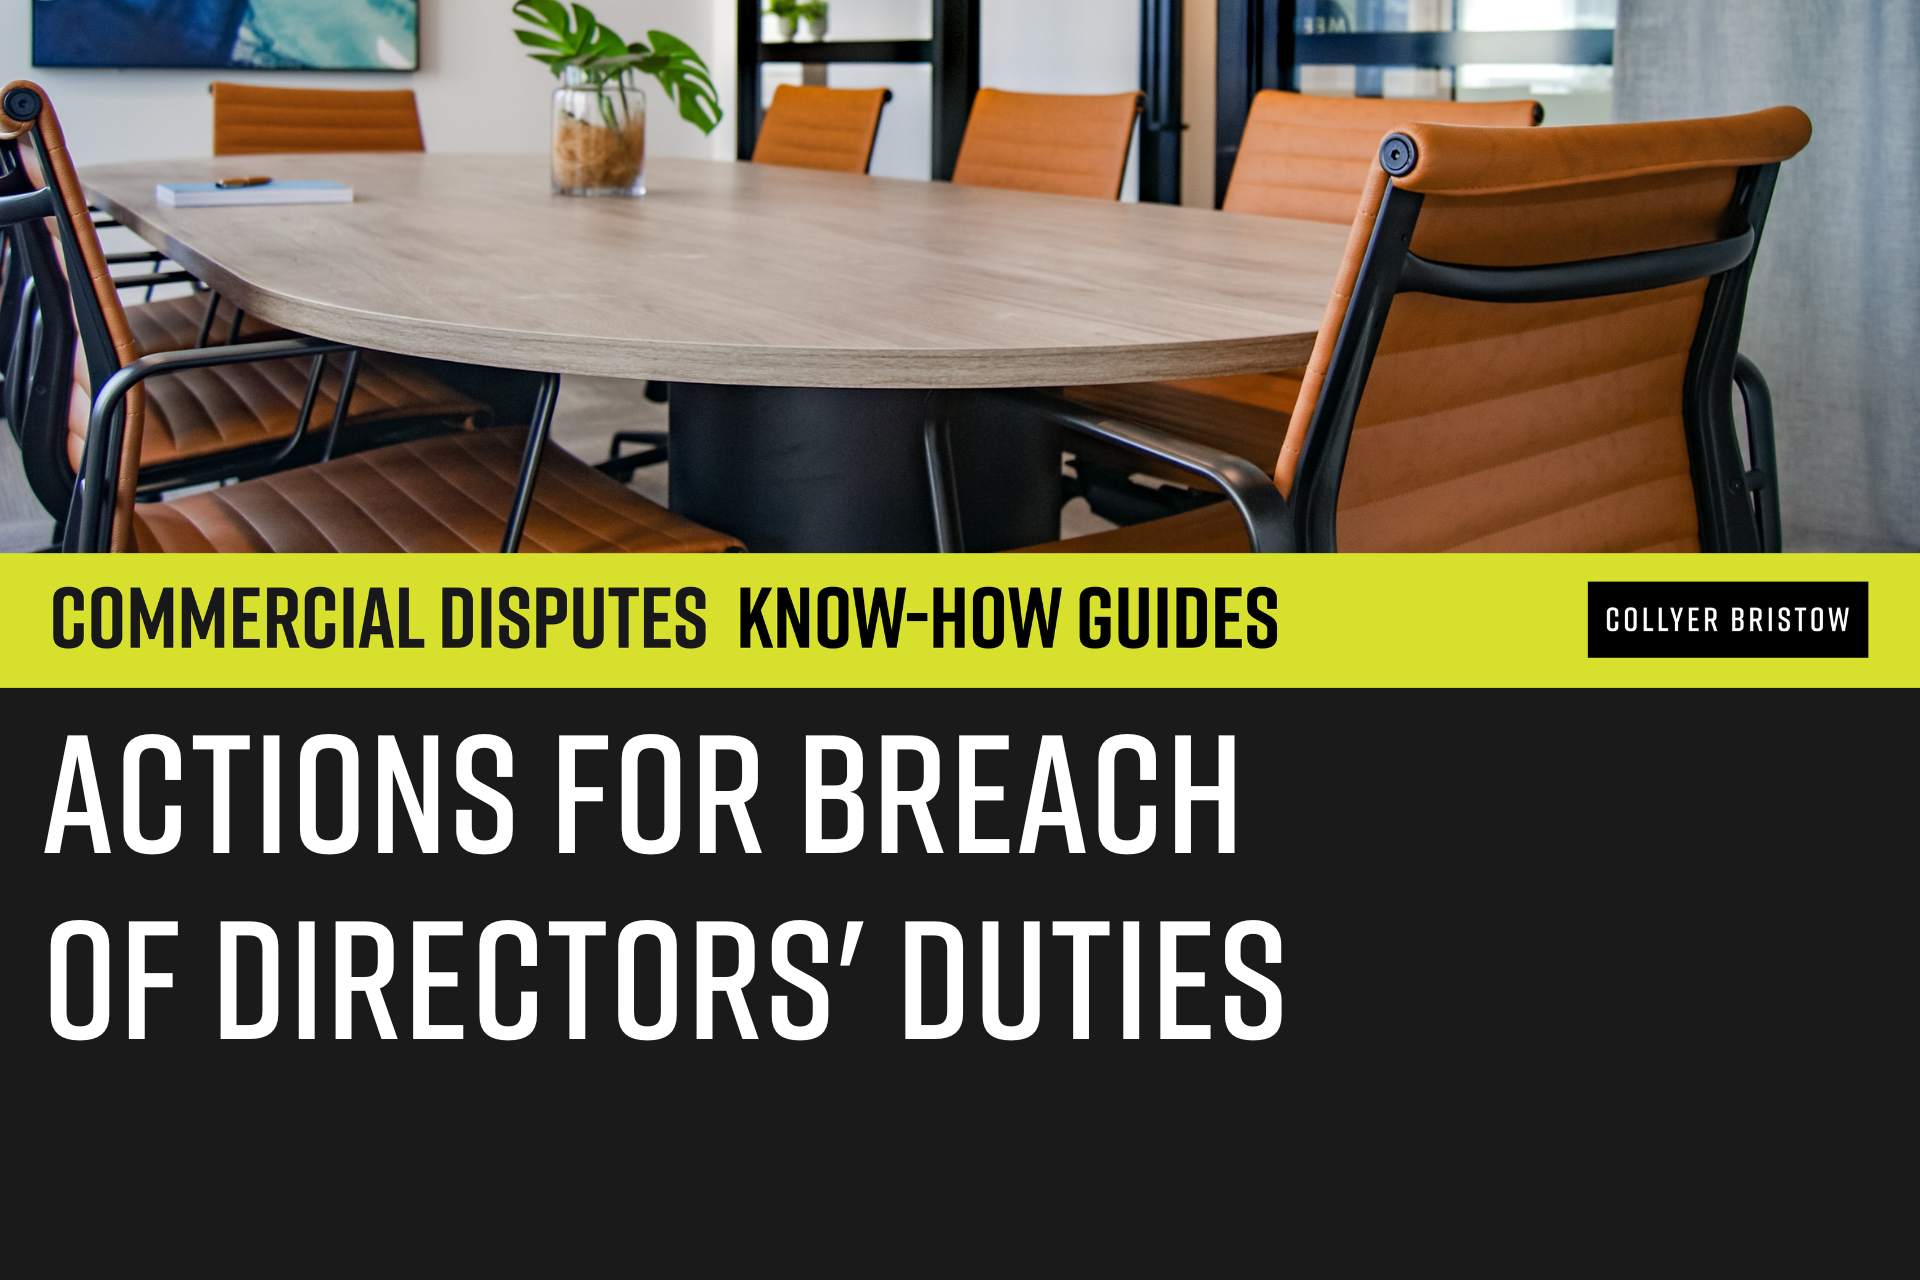 Actions for breach of directors' duties